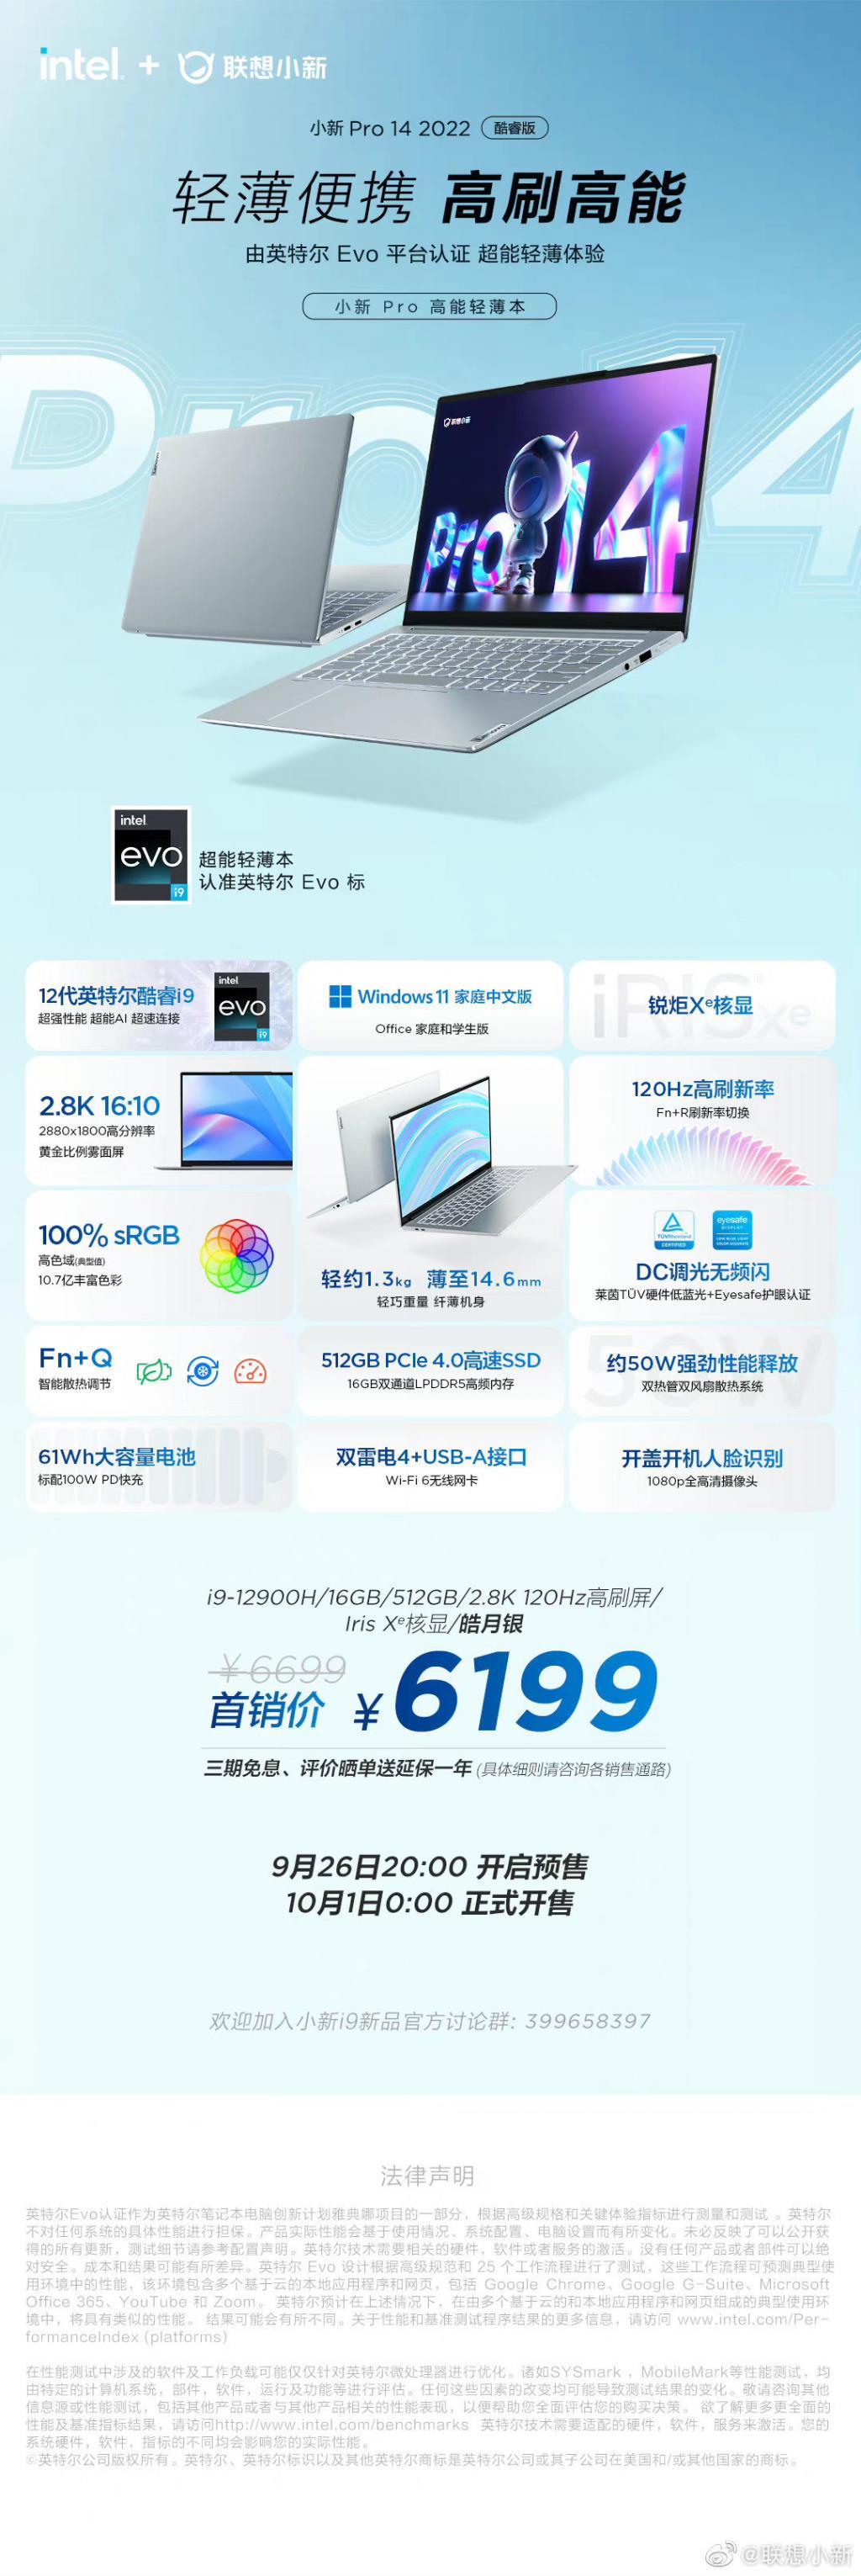 联想小新 Pro14/Pro 16 酷睿 i9 版开启预售：售价 6199 / 6299 元